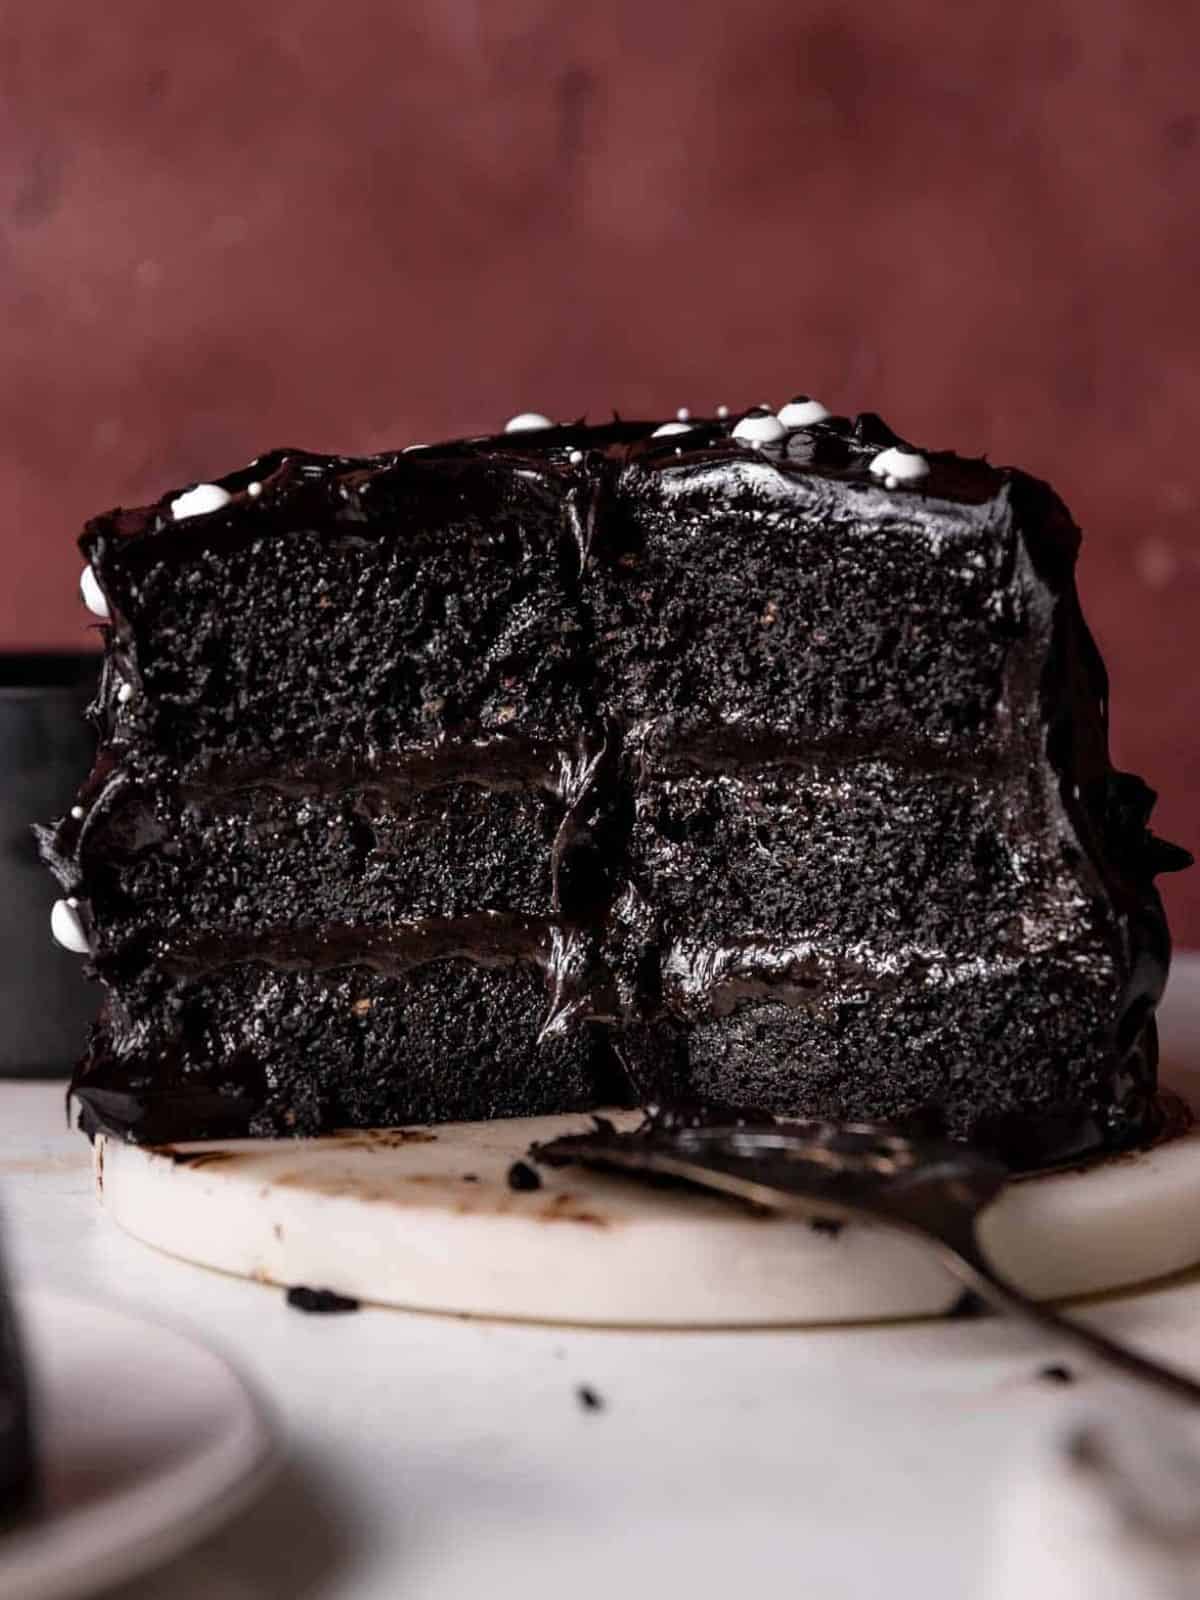 Black velvet cake. 